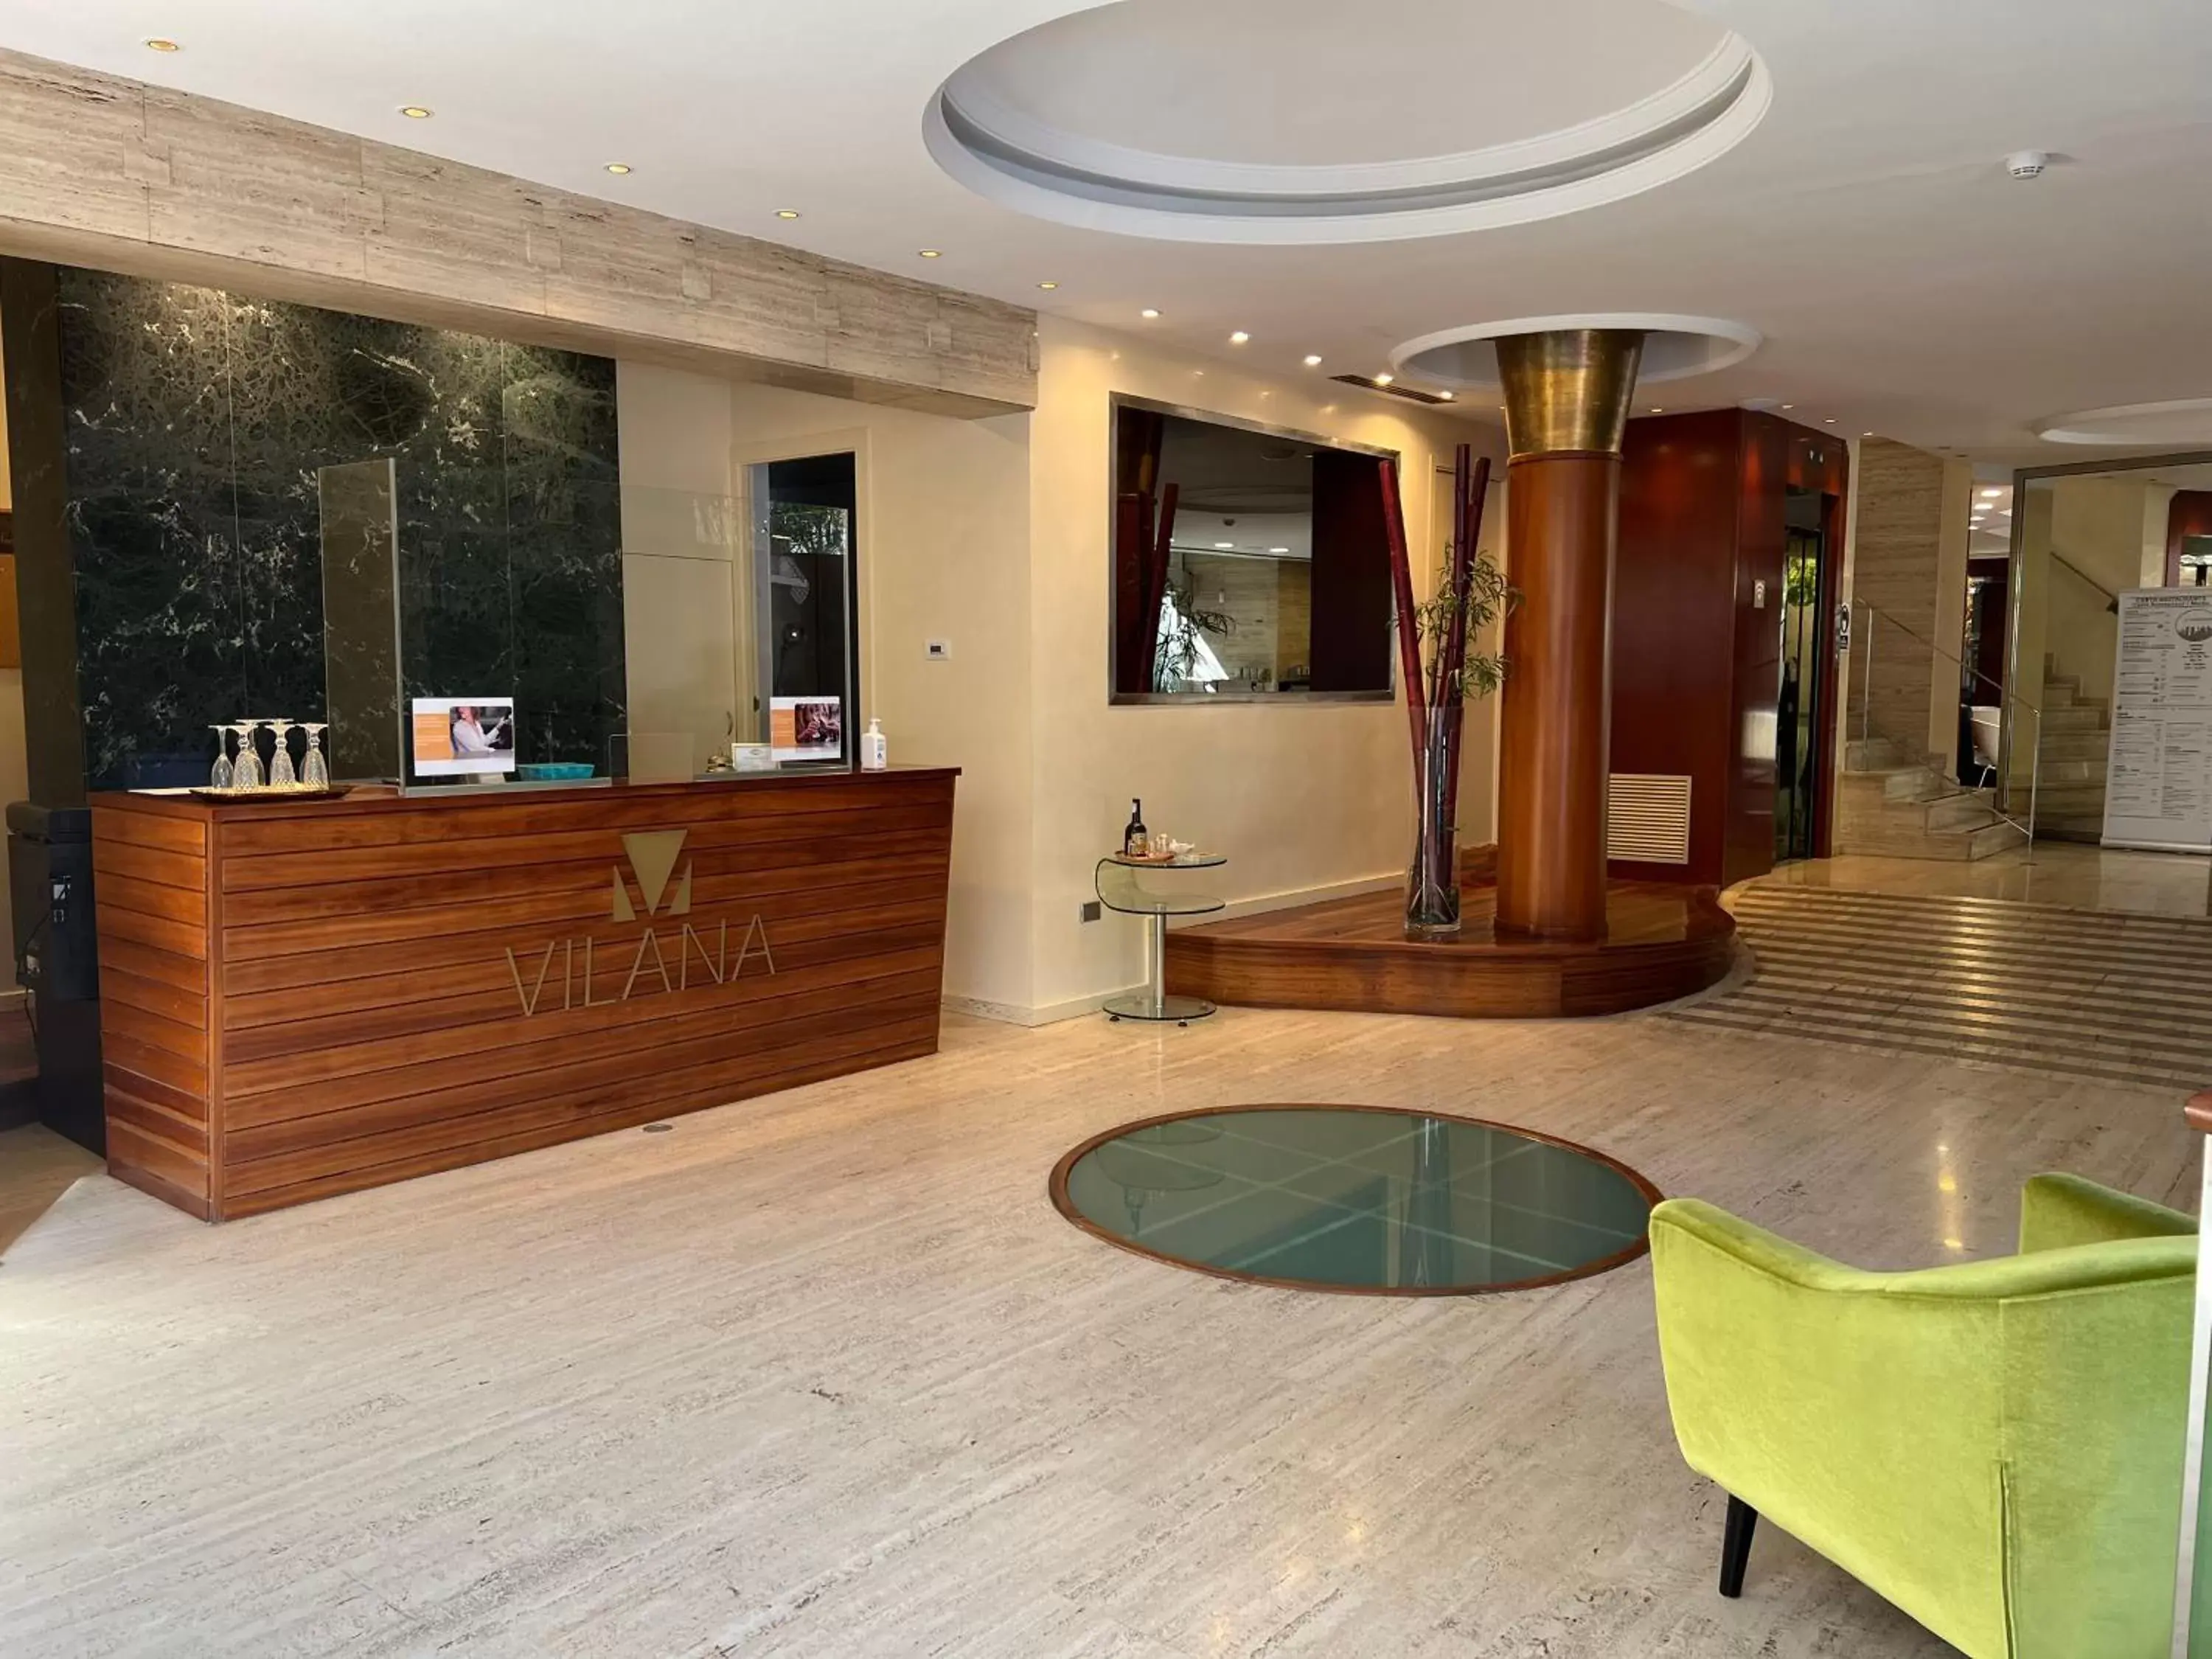 Lobby or reception, Lobby/Reception in Vilana Hotel